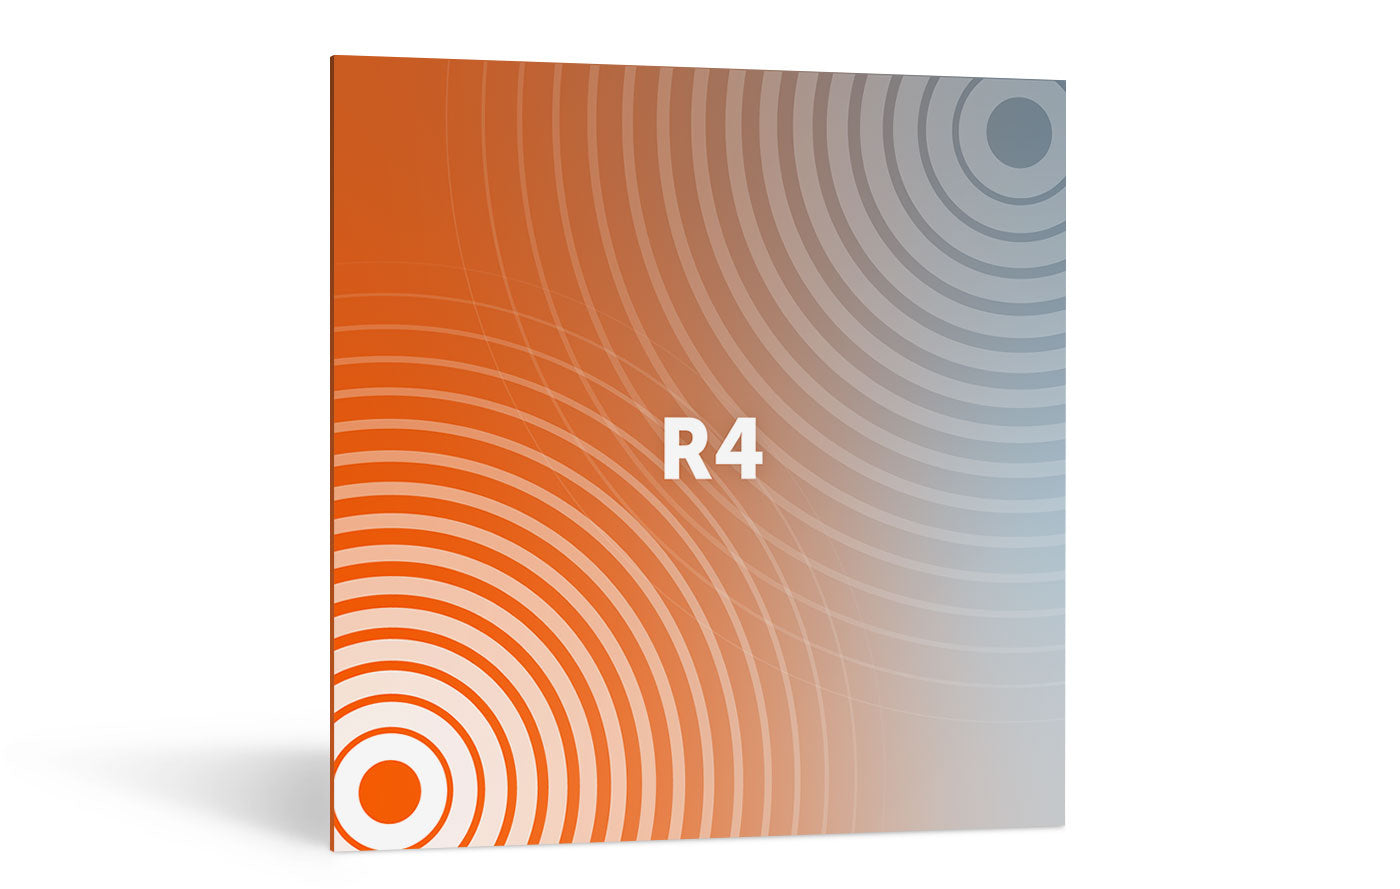 iZotope | Exponential Audio: R4